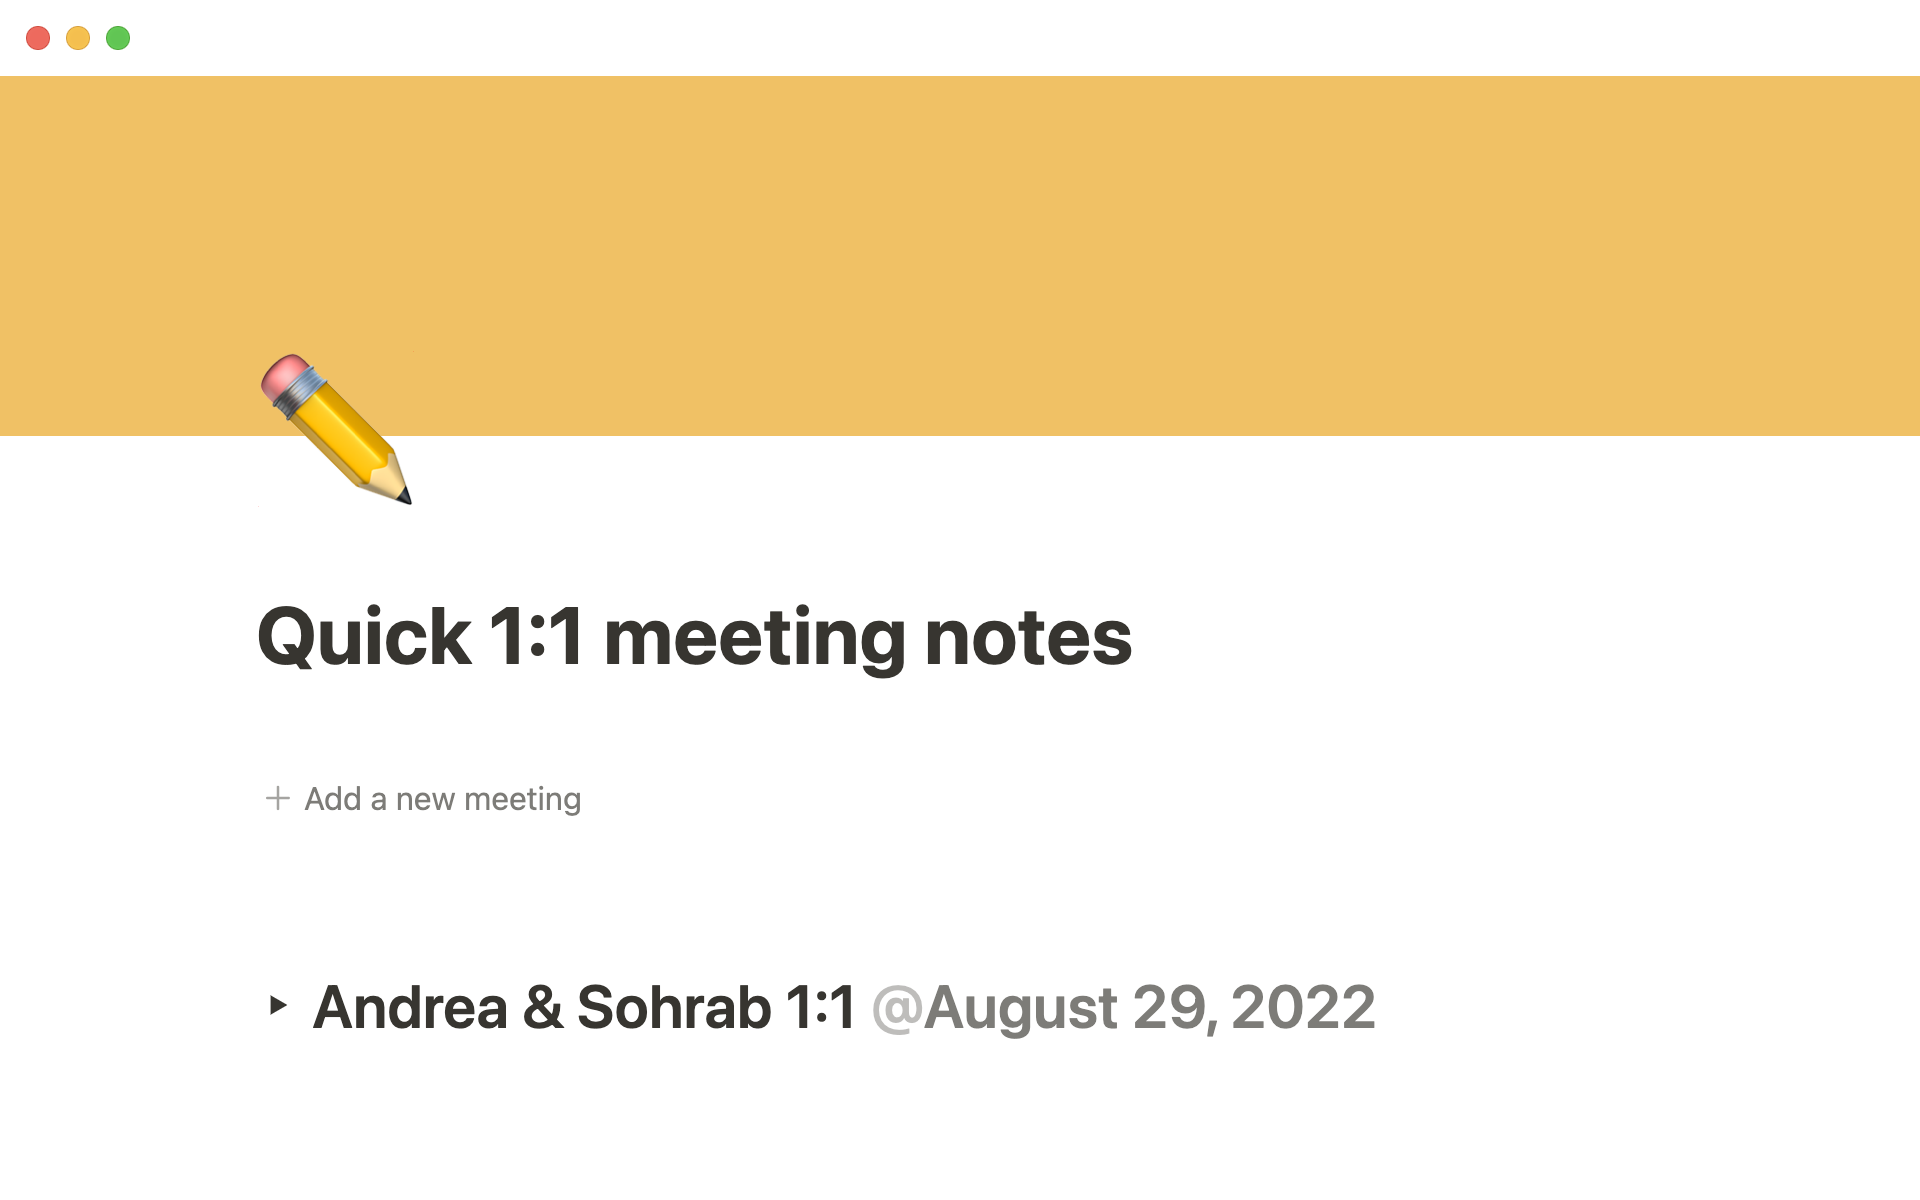 Aperçu du modèle de Quick 1:1 meeting notes